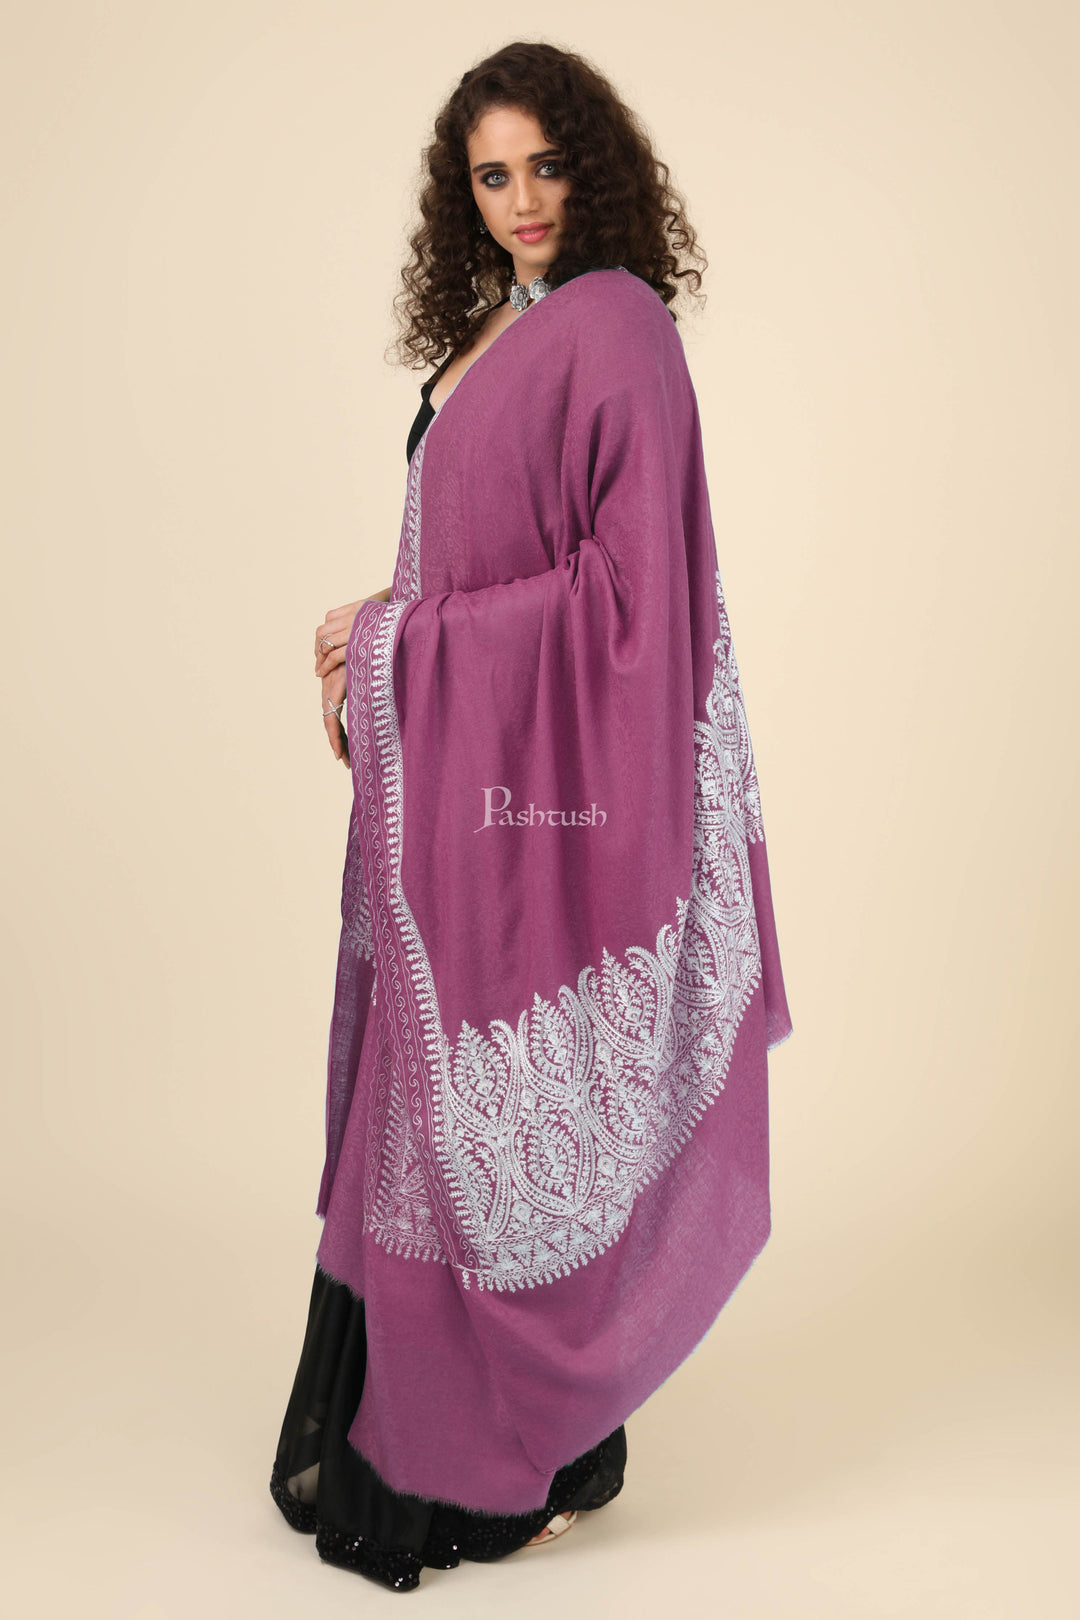 Pashtush India Womens Shawls Pashtush Womens Fine Wool Shawl, With Tone On Tone Nalki Embroidery, Soft And Warm, Majenta